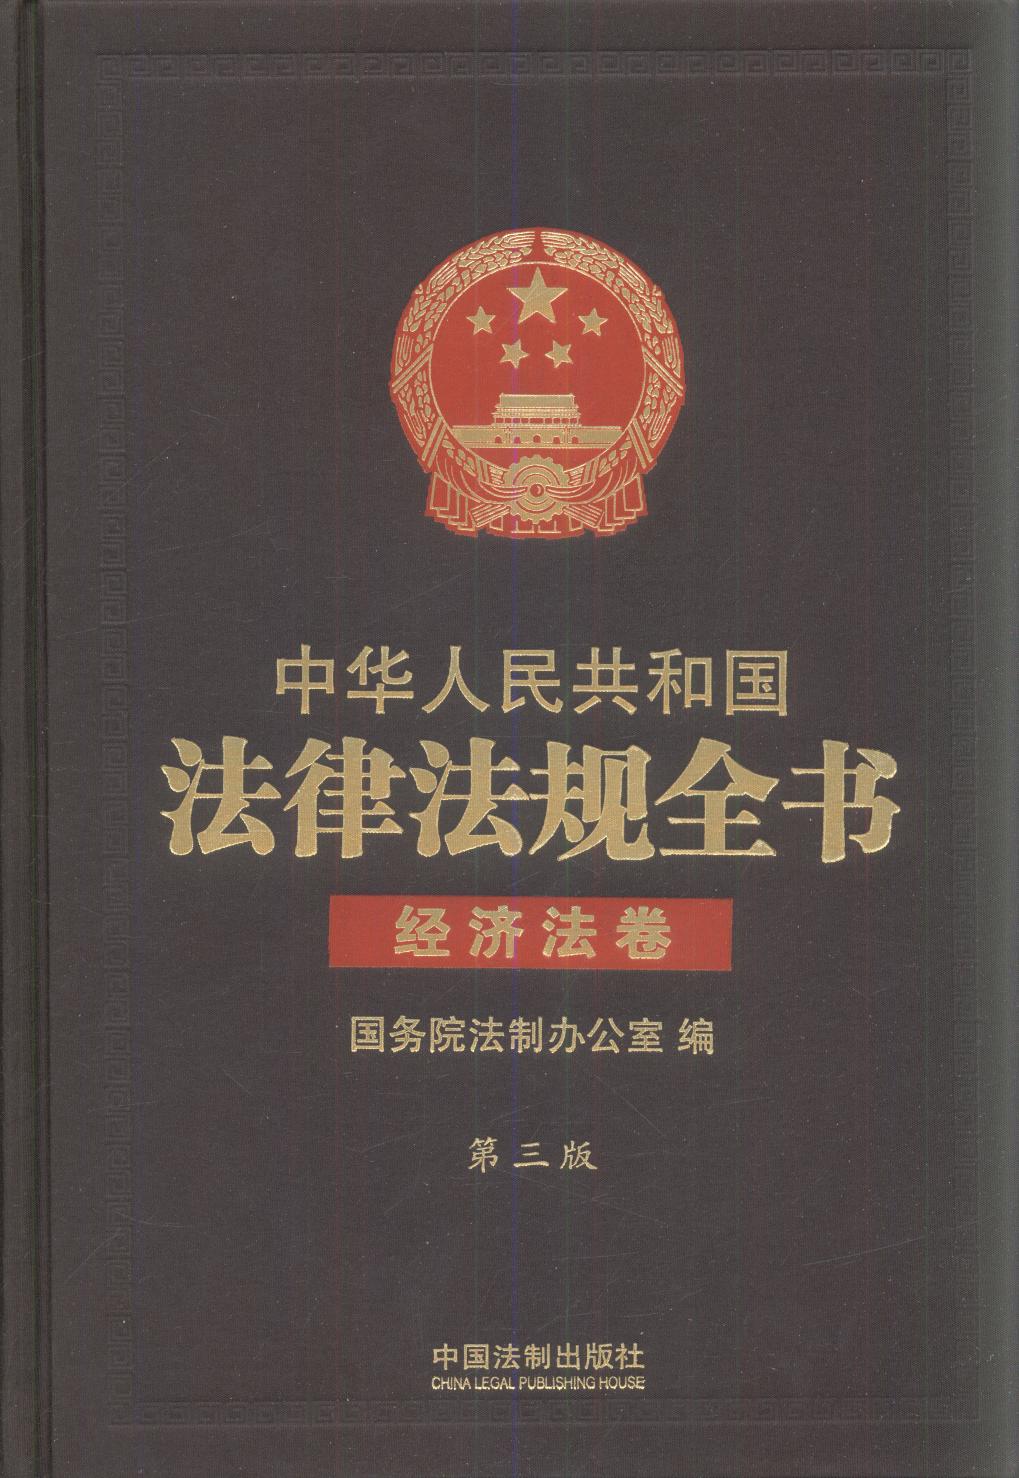 .中华人民共和国法律法规全书（三卷本）（上、中、下）（第三版